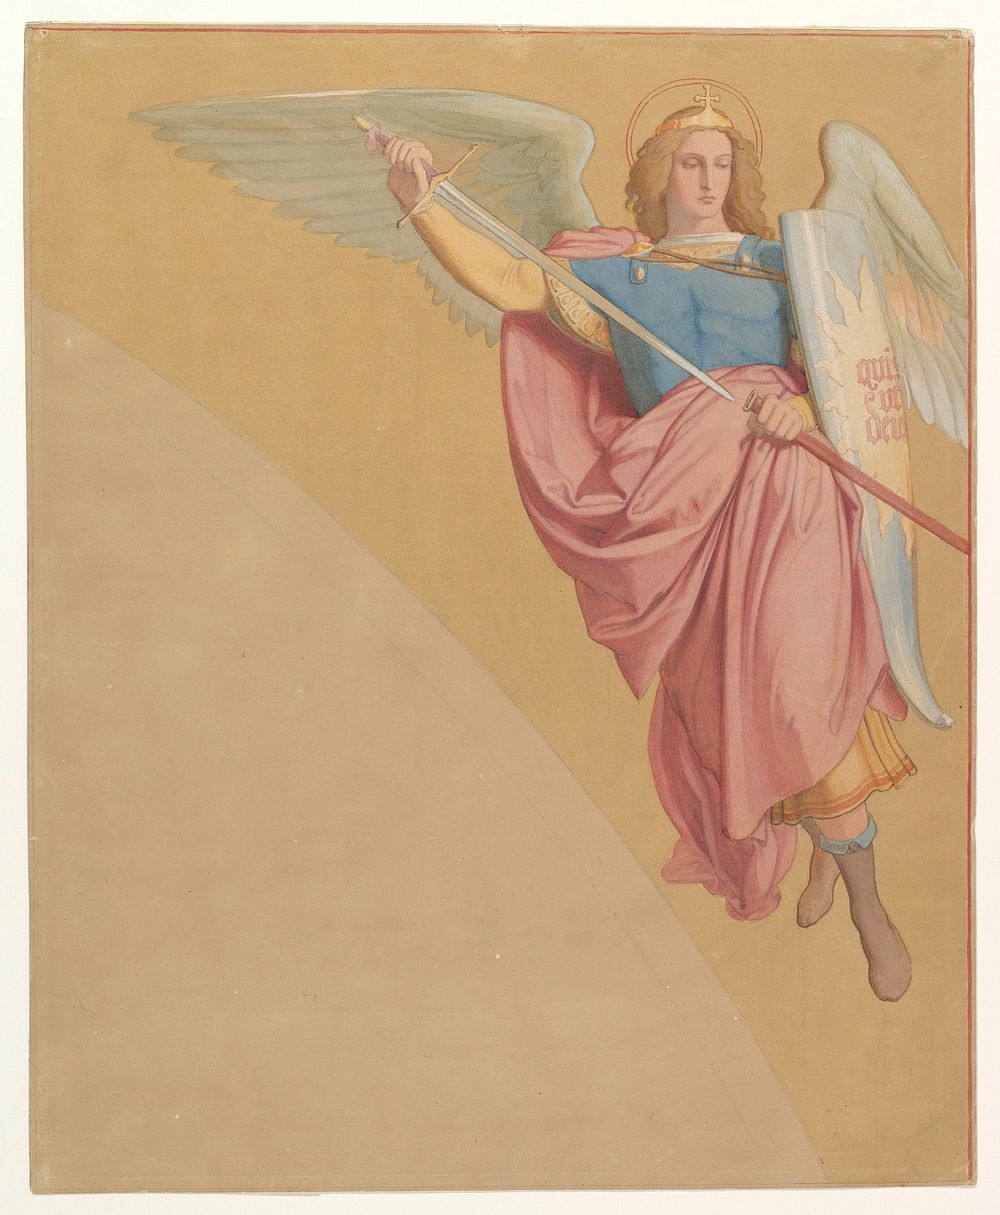 Archangel Drawing a Sword by Eduard Jakob von Steinle